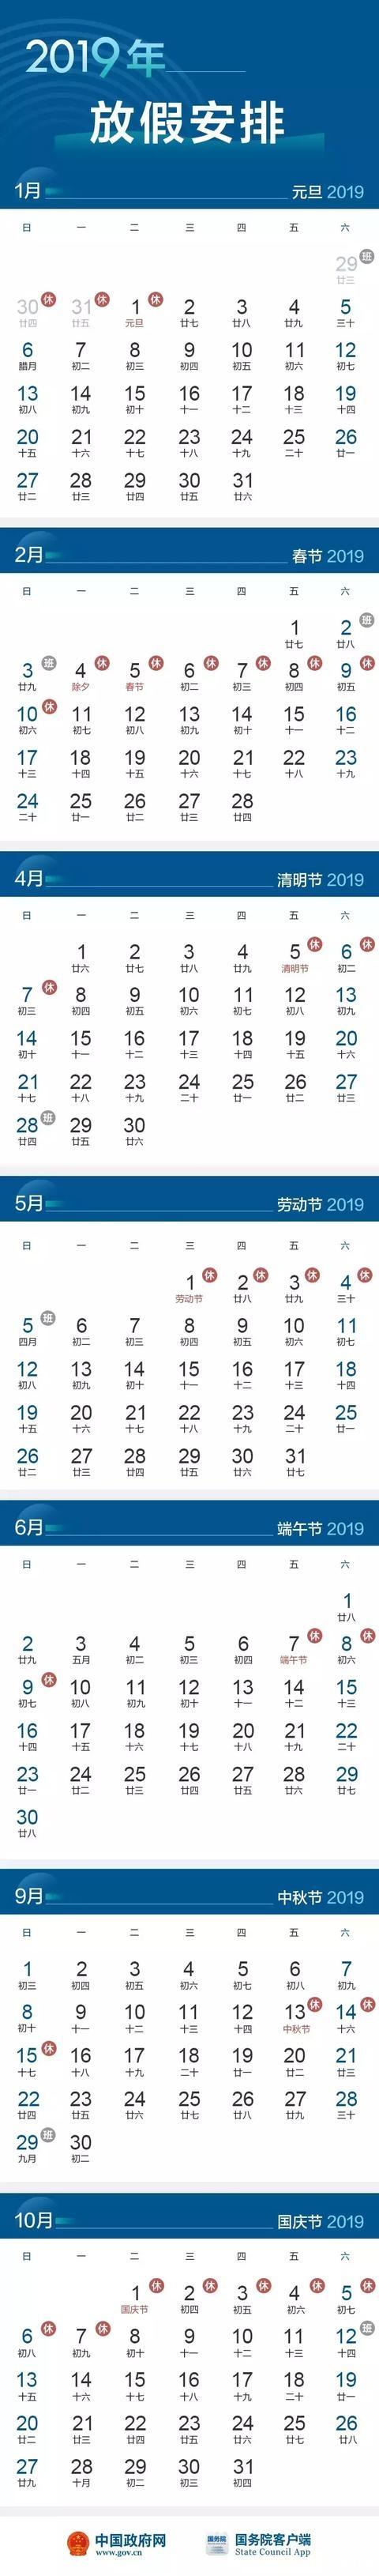 2019年劳动节放假安排时间表 2019年劳动节放几天假